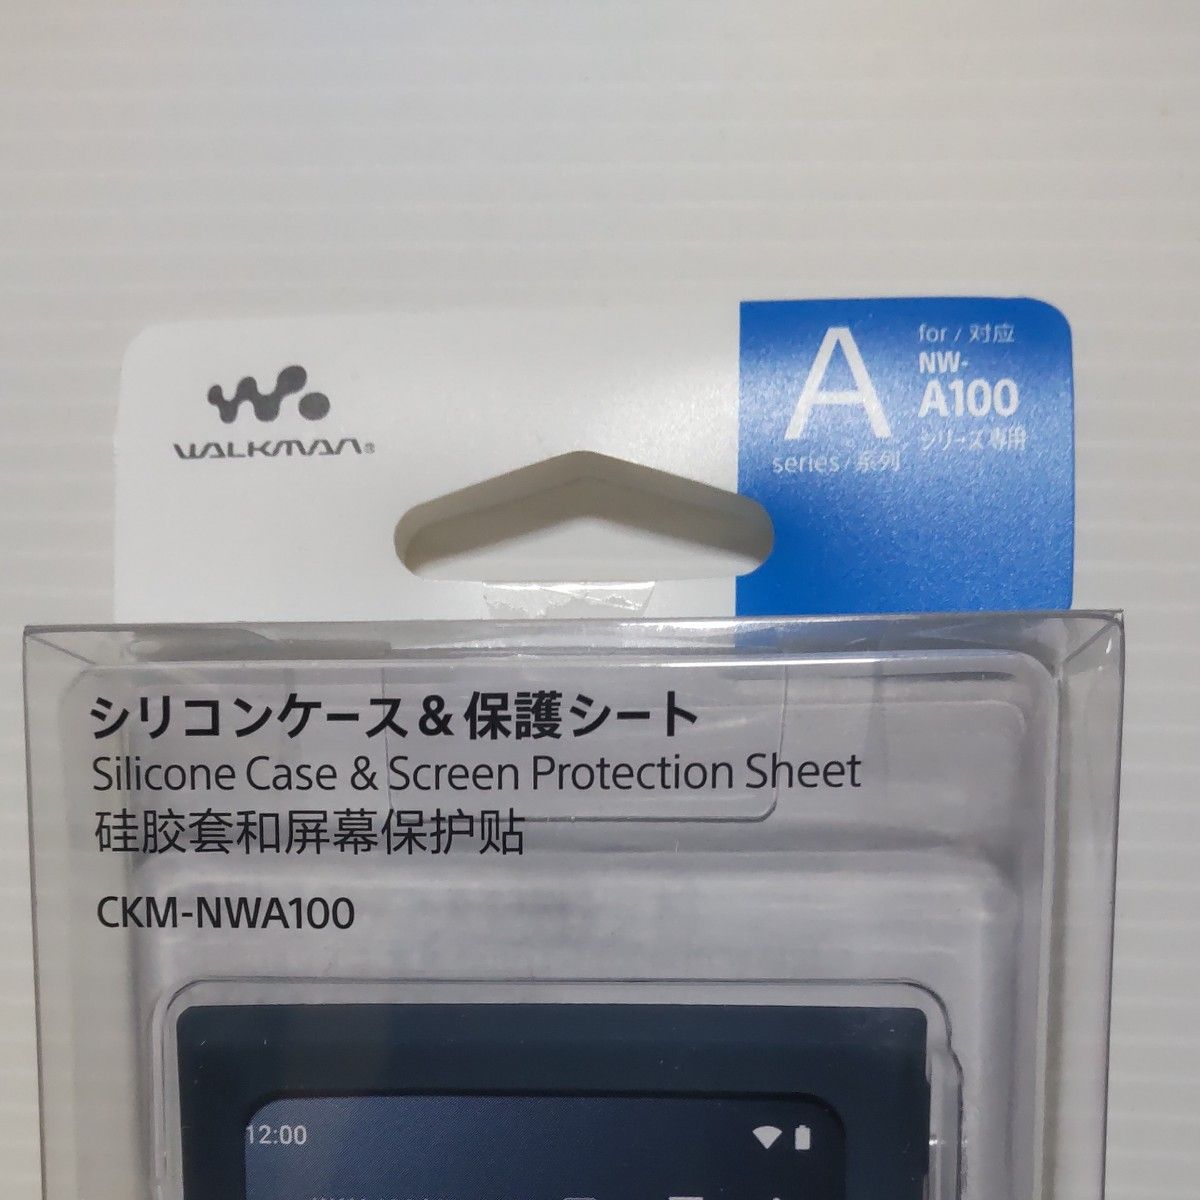 ソニー ウォークマン純正アクセサリー NW-A100シリーズ専用 シリコンケース ブルー CKM-NWA100 L